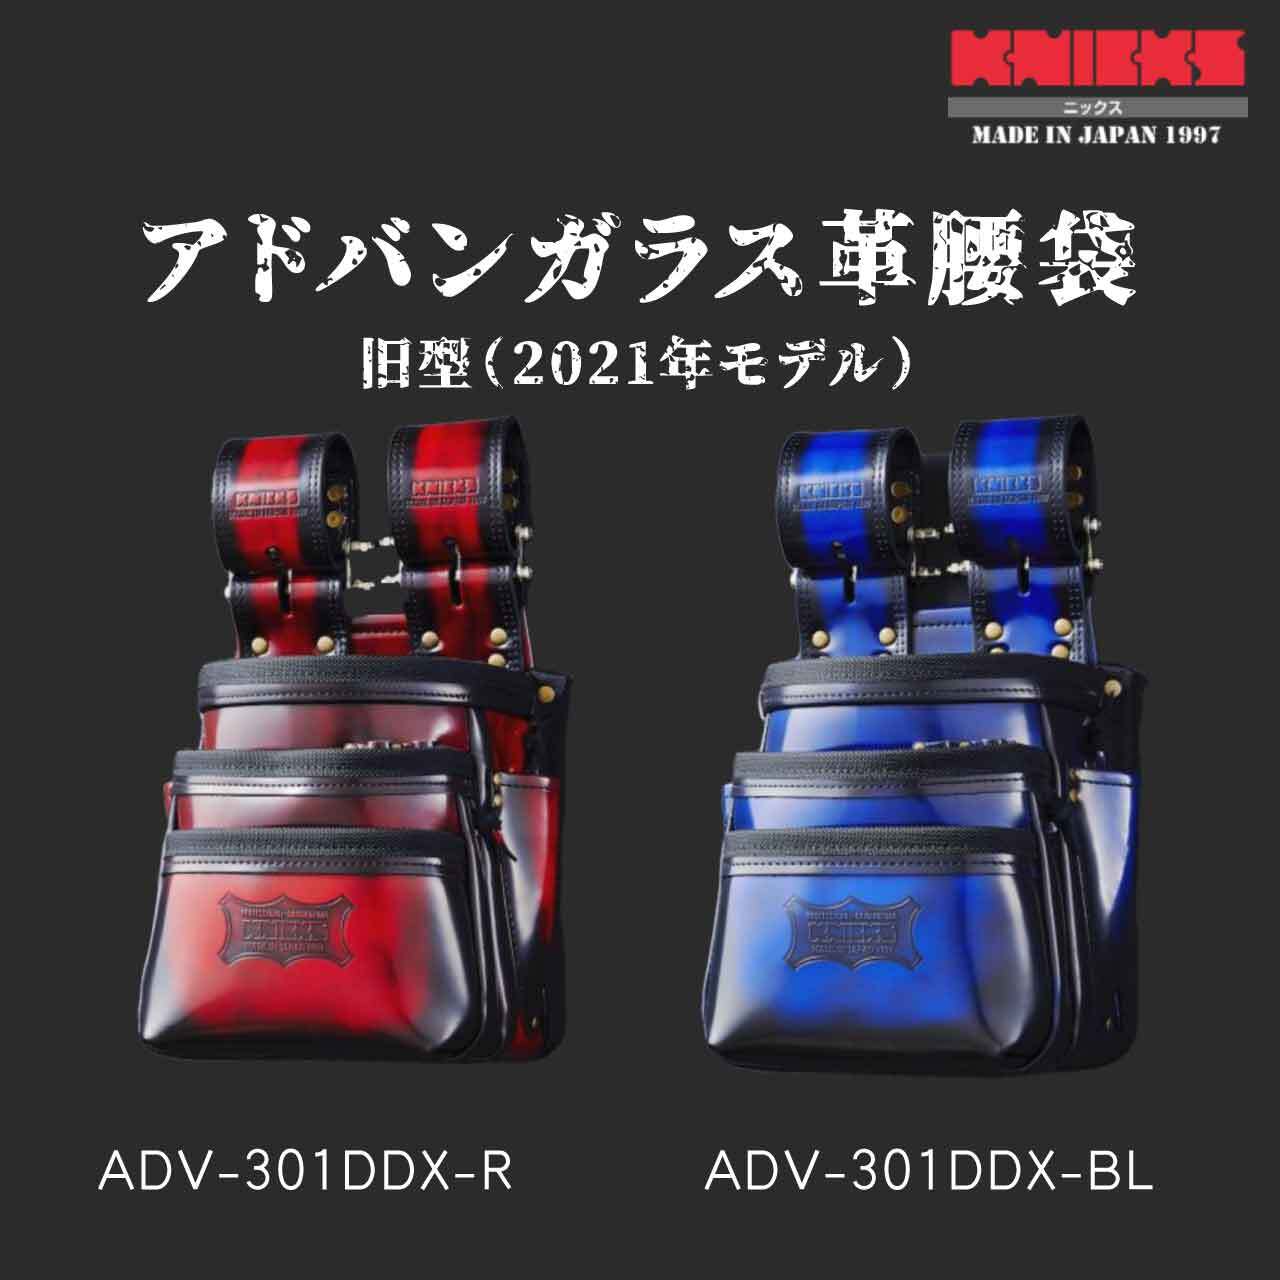 KNICKS ニックス ADV-301DDX-BL アドバンガラス革腰袋ブルー